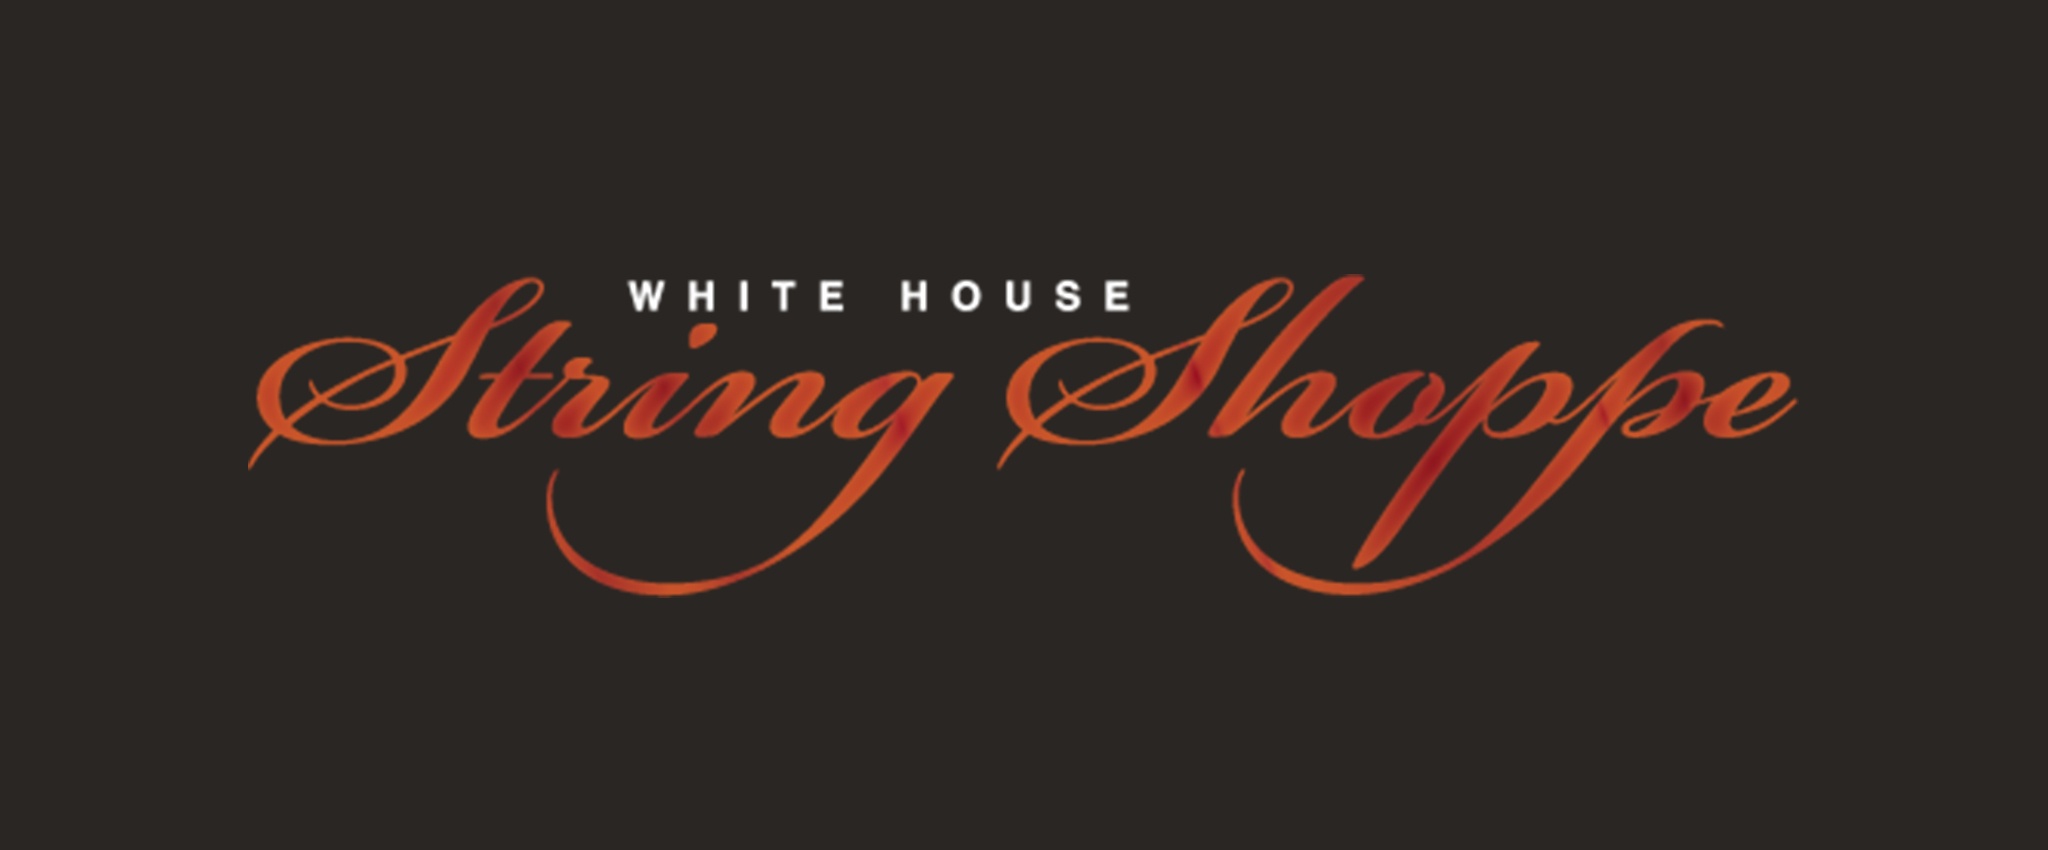 White House of Music String Shoppe Dark Logo